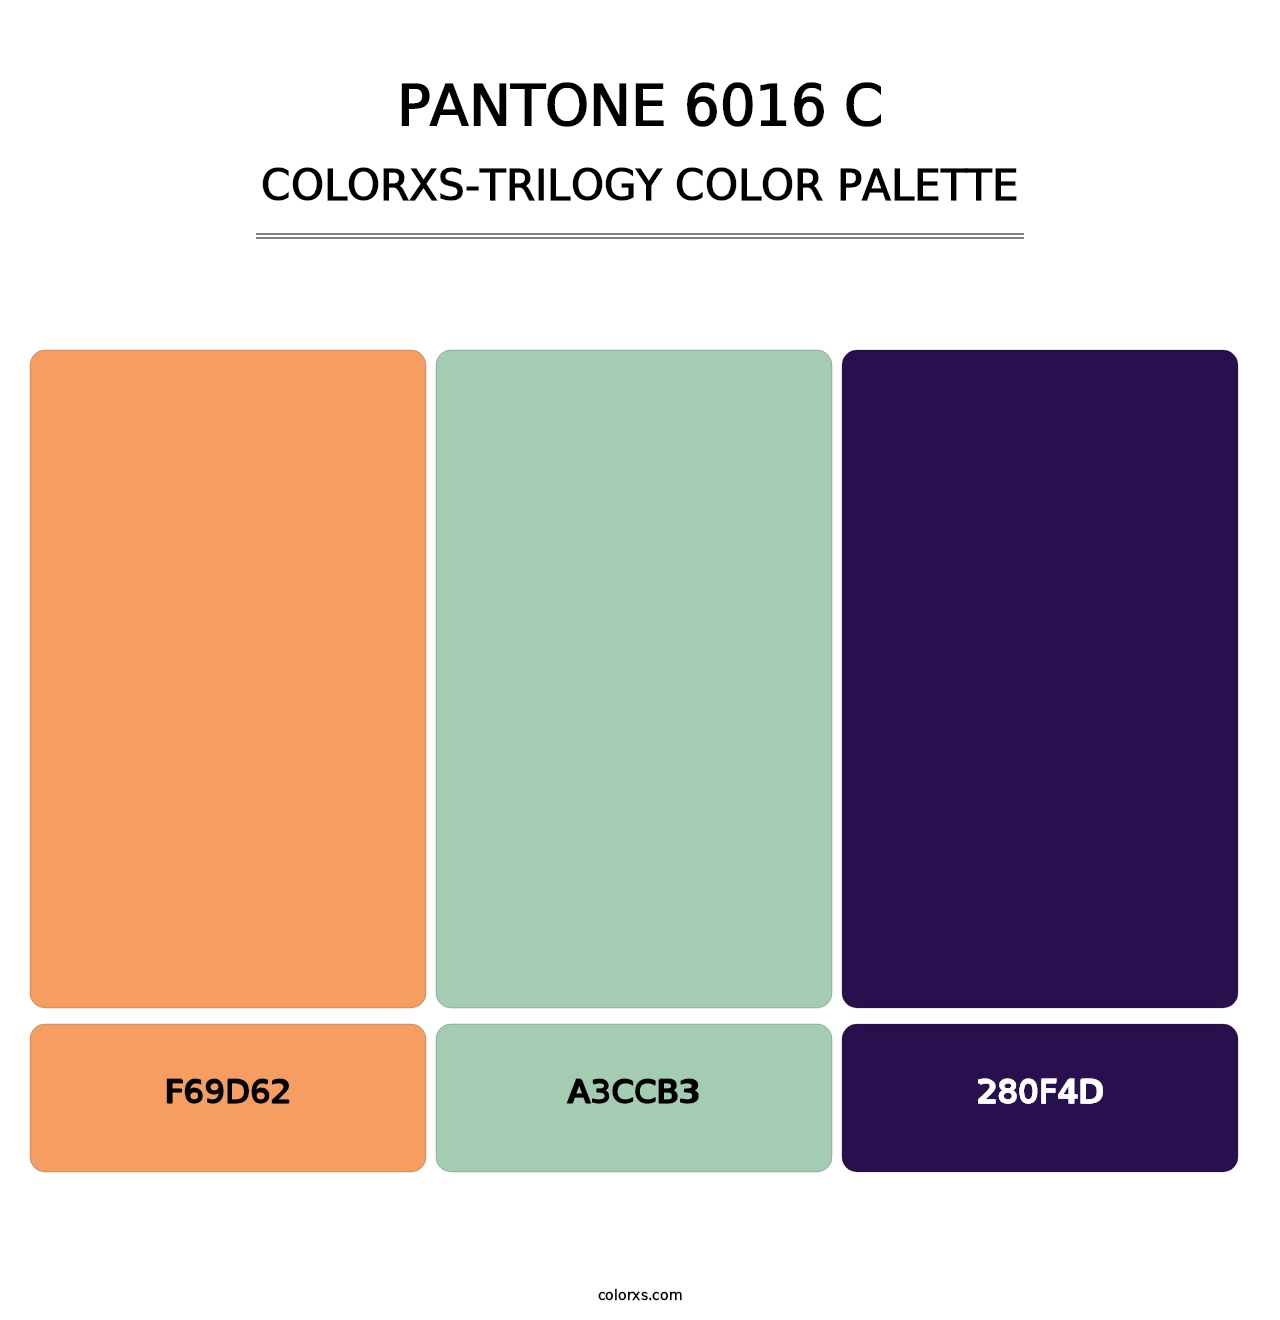 PANTONE 6016 C - Colorxs Trilogy Palette